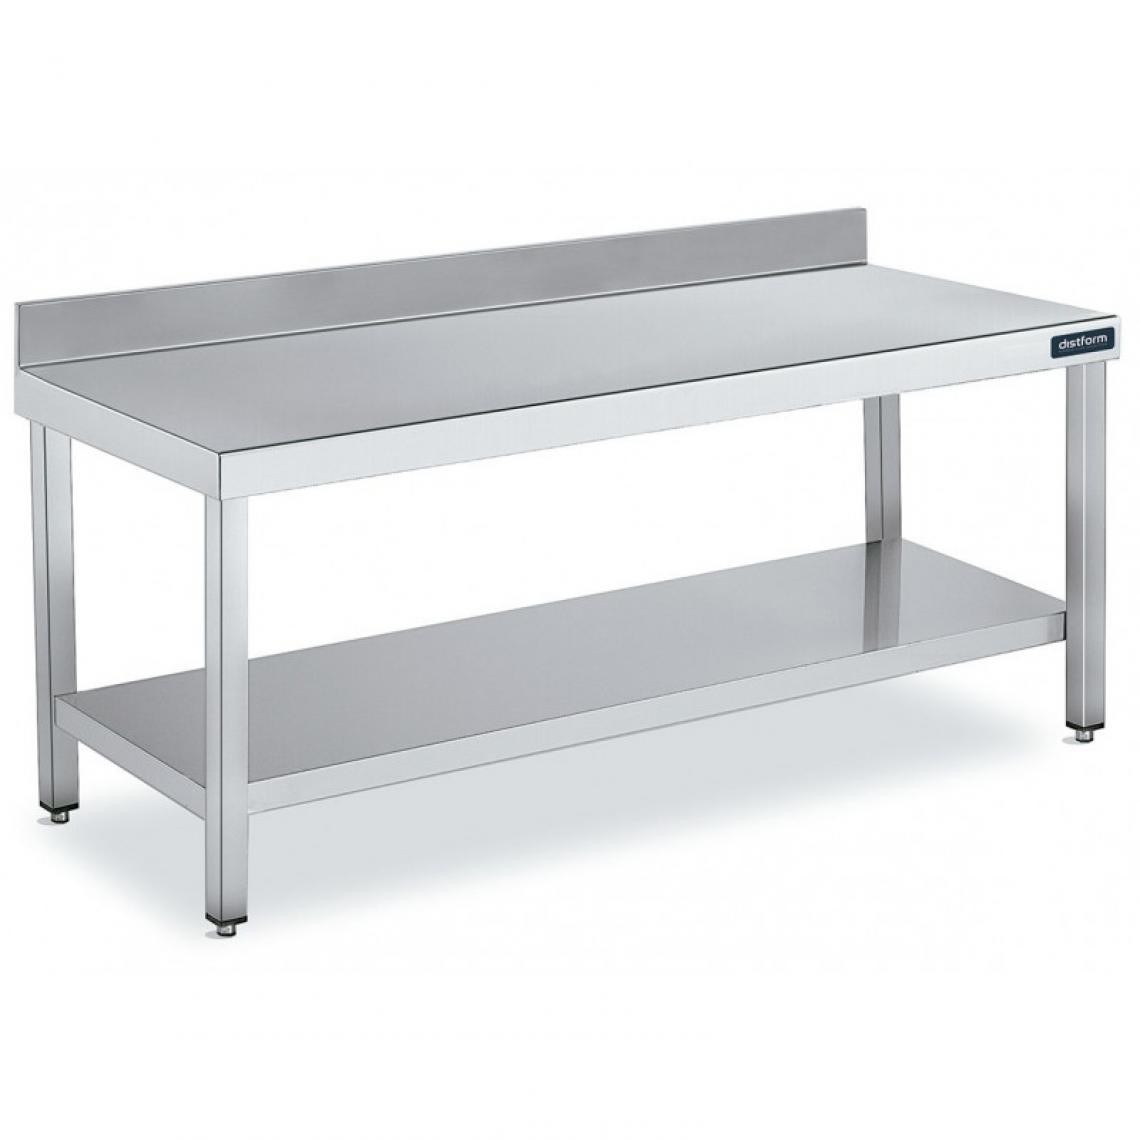 DISTFORM - Table Adossée en Inox avec 1 étagère Profondeur 700 mm - Distform - Acier inoxydable1200x700 - Tables à manger